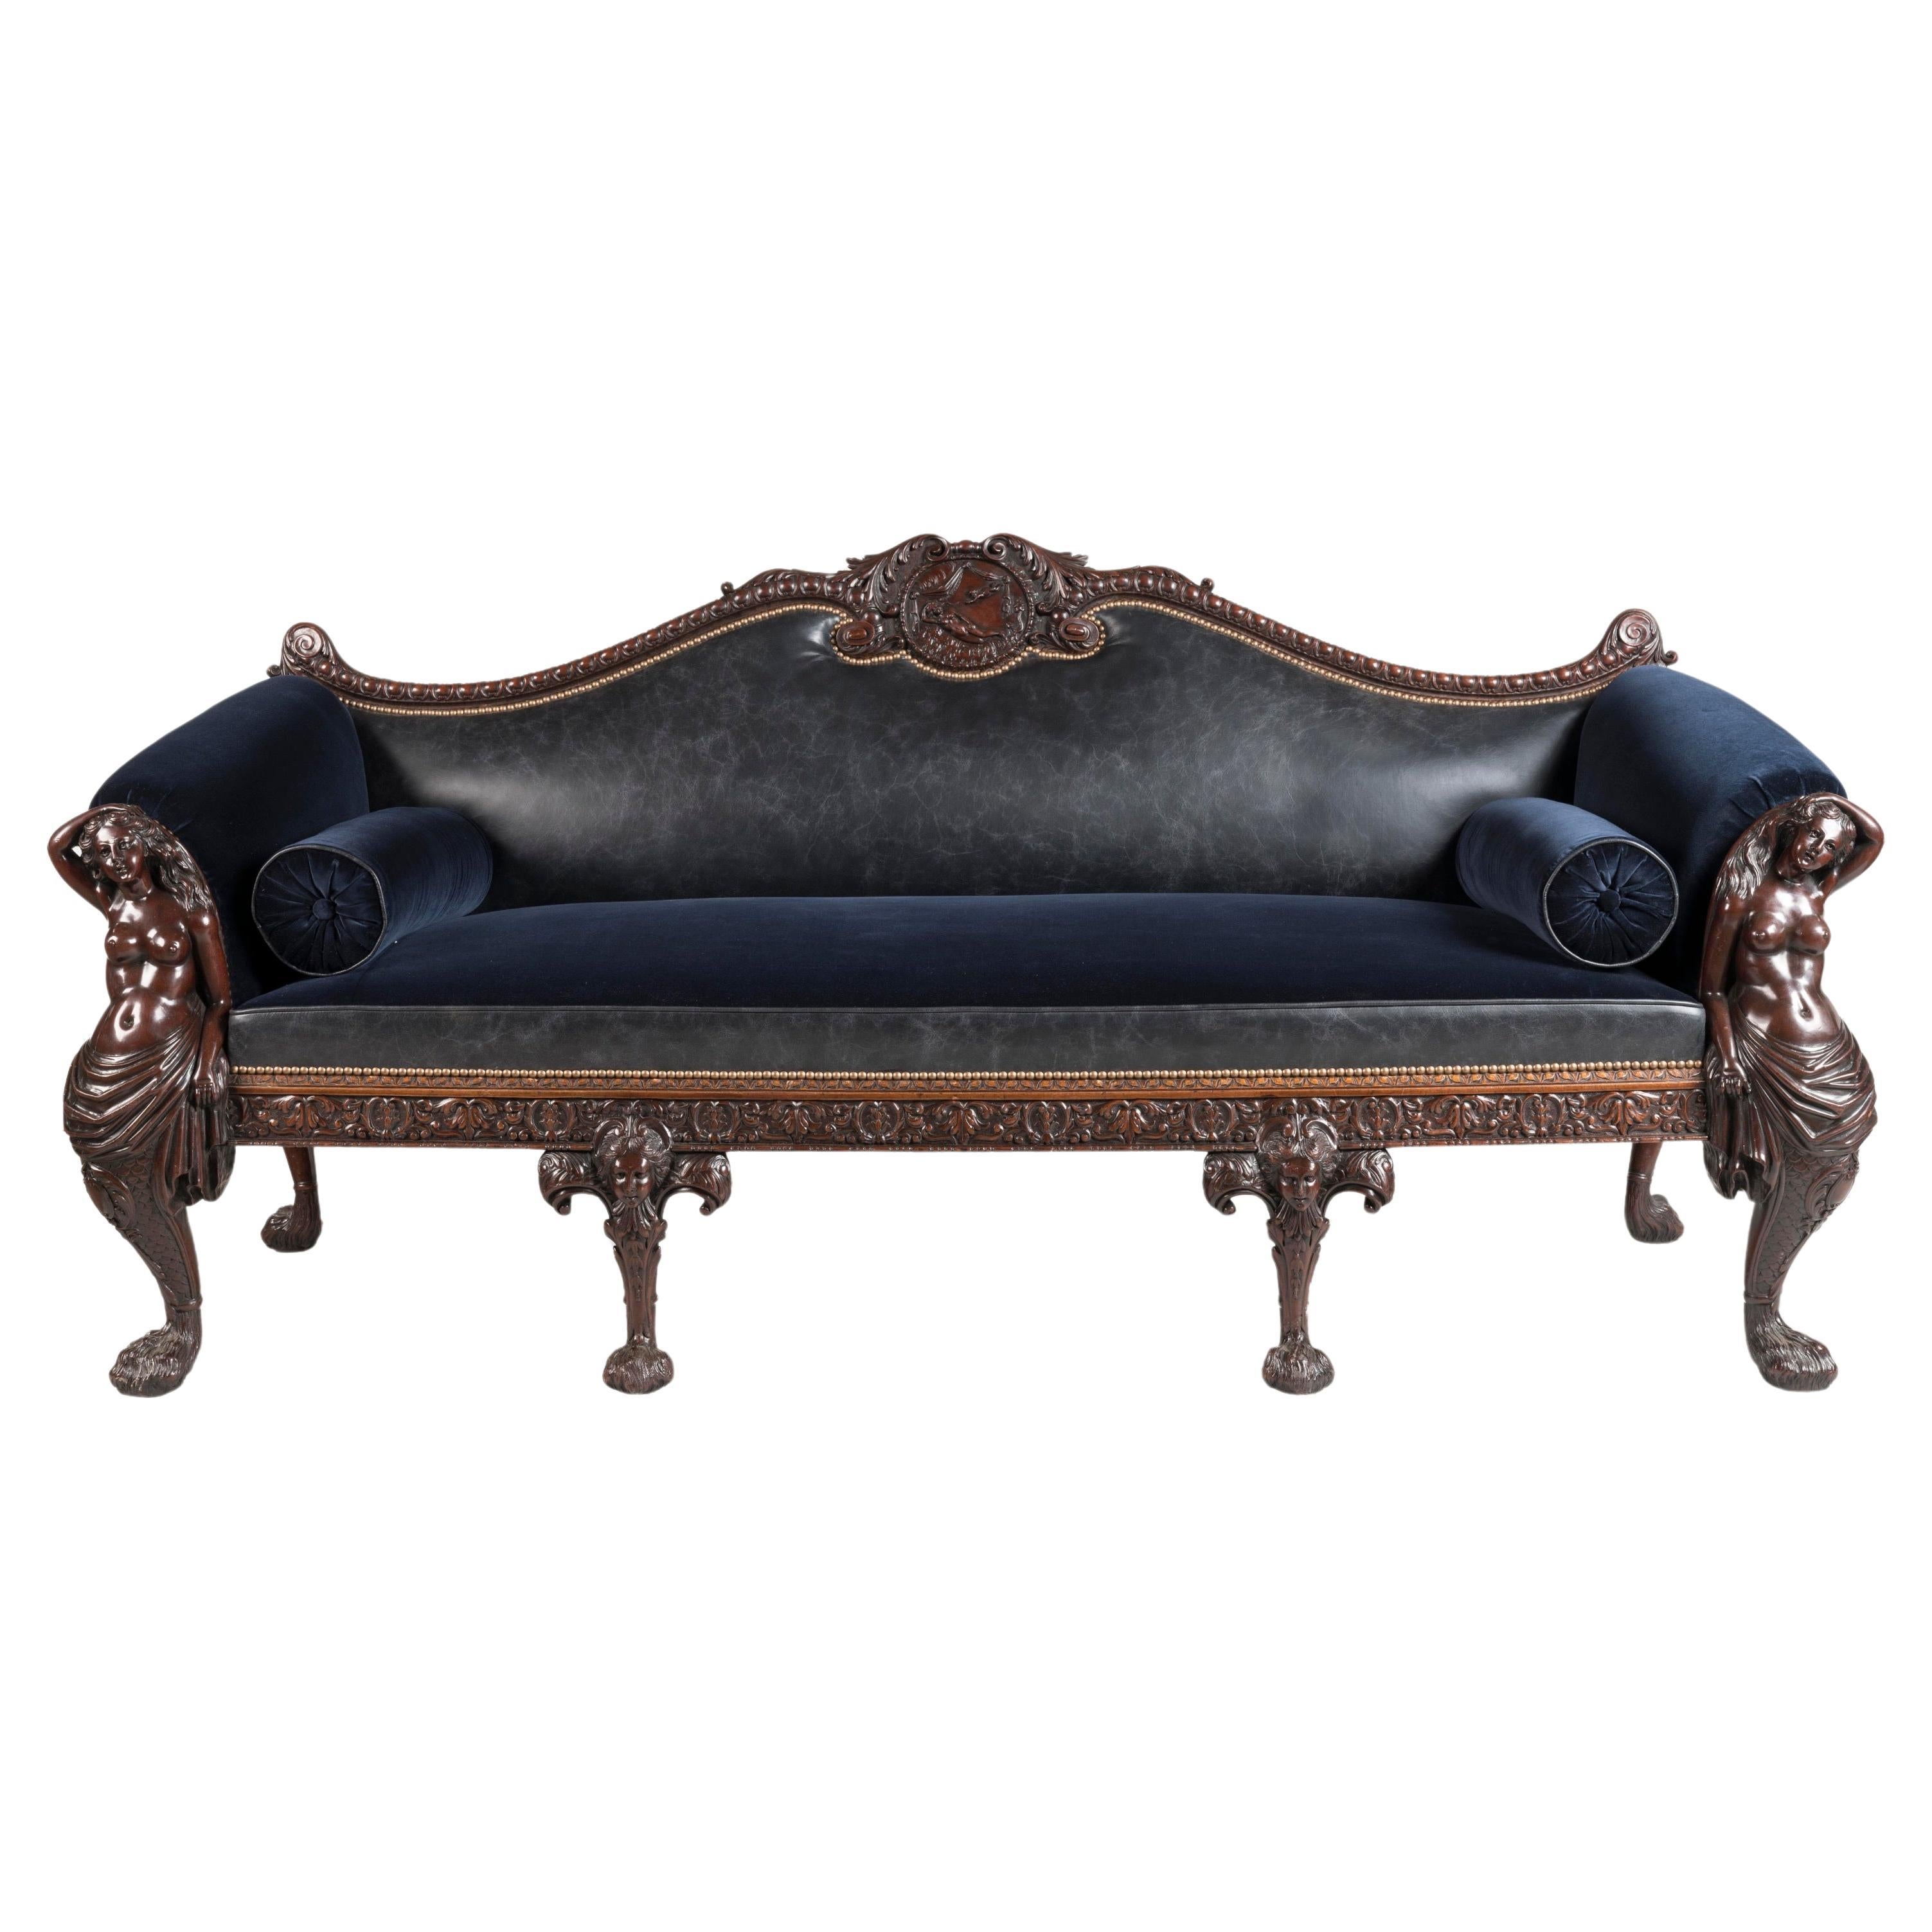 Großes handgeschnitztes Mahagoni-Sofa aus dem späten 19. Jahrhundert mit Leder- und Samtstoff